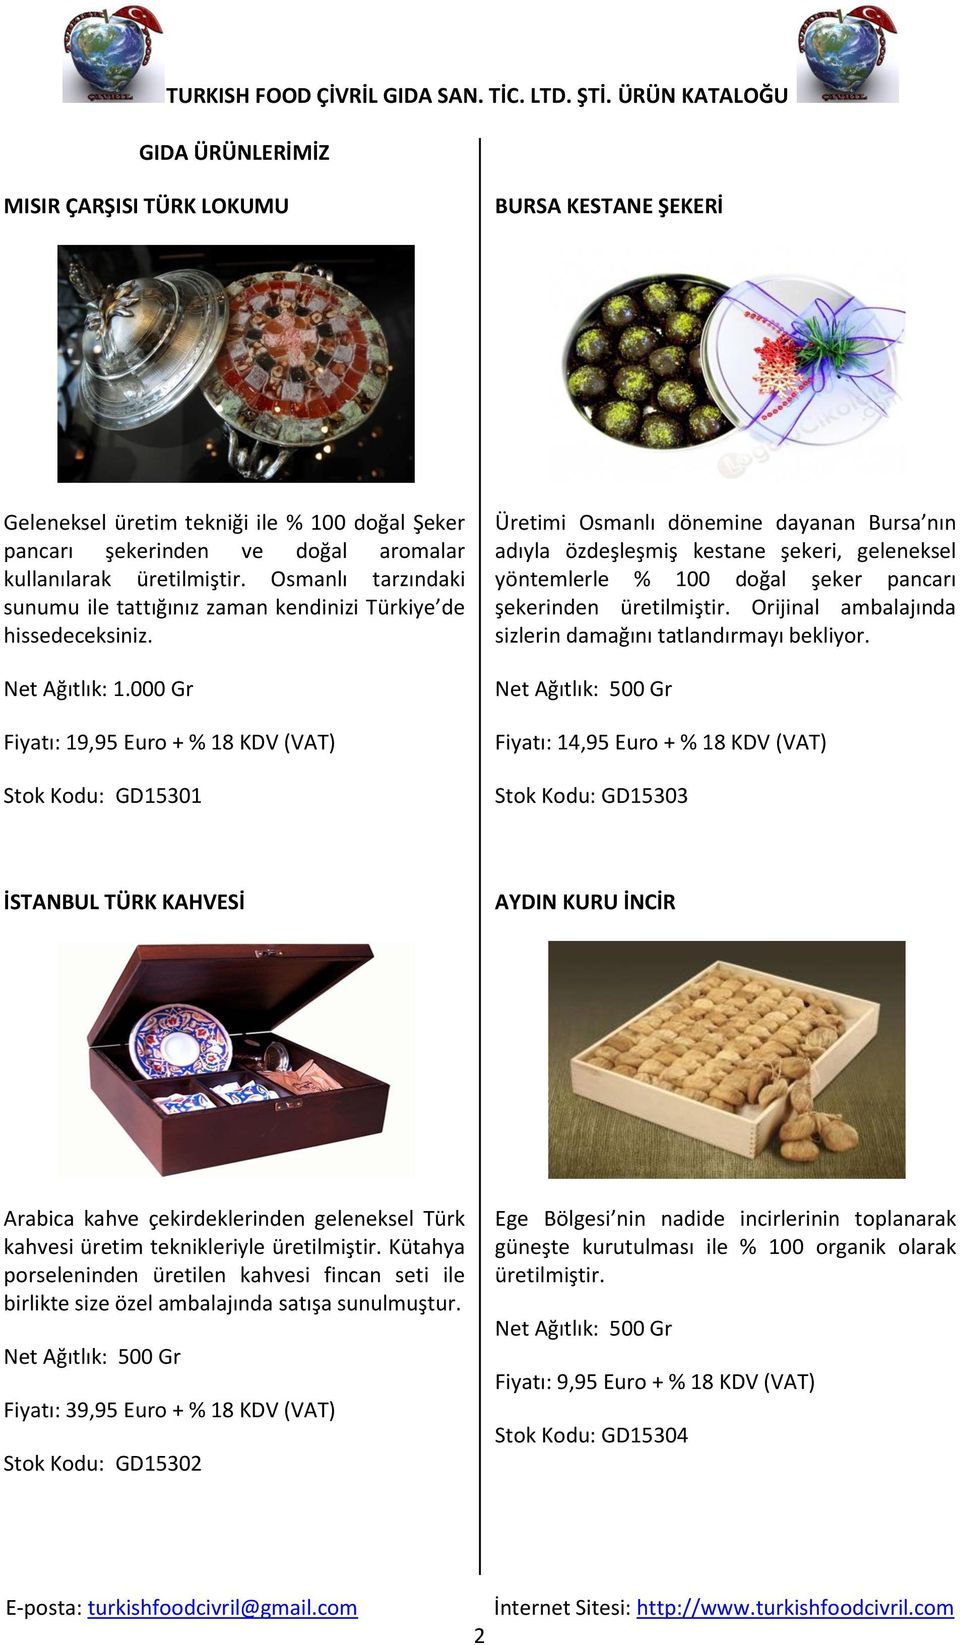 000 Gr Fiyatı: 19,95 Euro + % 18 KDV (VAT) Stok Kodu: GD15301 Üretimi Osmanlı dönemine dayanan Bursa nın adıyla özdeşleşmiş kestane şekeri, geleneksel yöntemlerle % 100 doğal şeker pancarı şekerinden